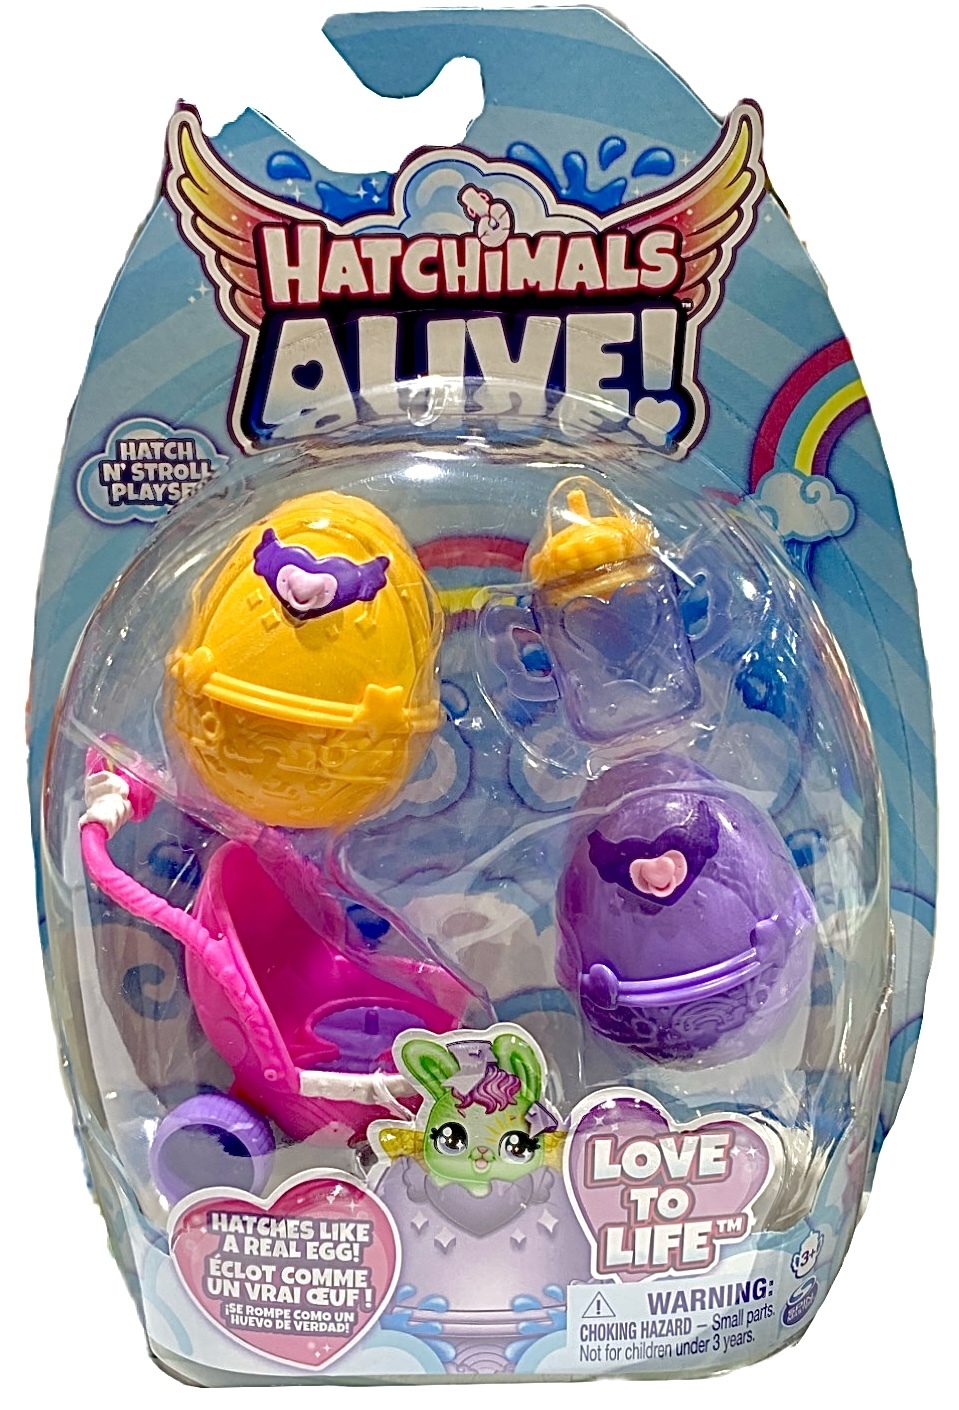 Hatchimals Alive! Hatch 'n' Stroll Playset